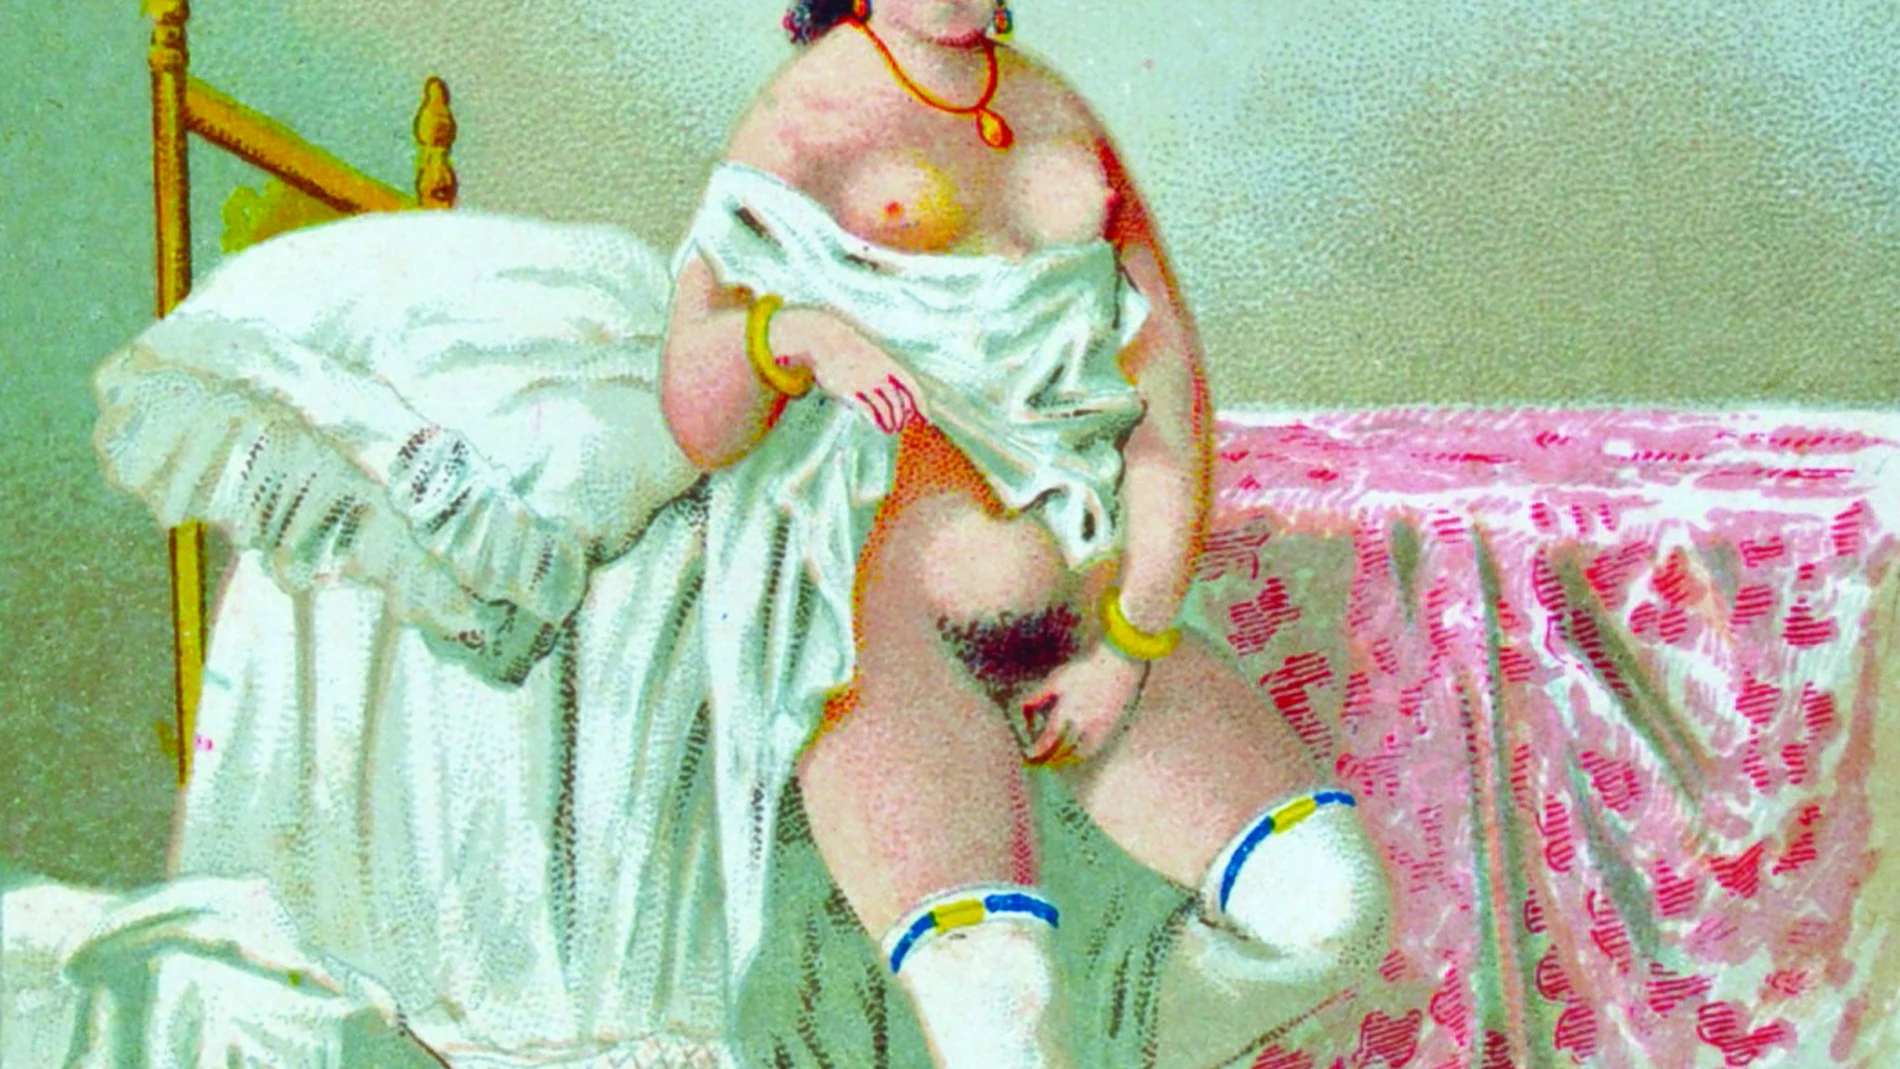 Una de las ilustraciones del siglo XIX que ha sido incluida en "Eros de papel", un estudio bibliográfico que revisa y cataloga medio millar de libros y folletos clandestinos de tema erótico o pornográfico que fueron publicados en España durante el siglo XIX y hasta el final de la Guerra Civil, 1939